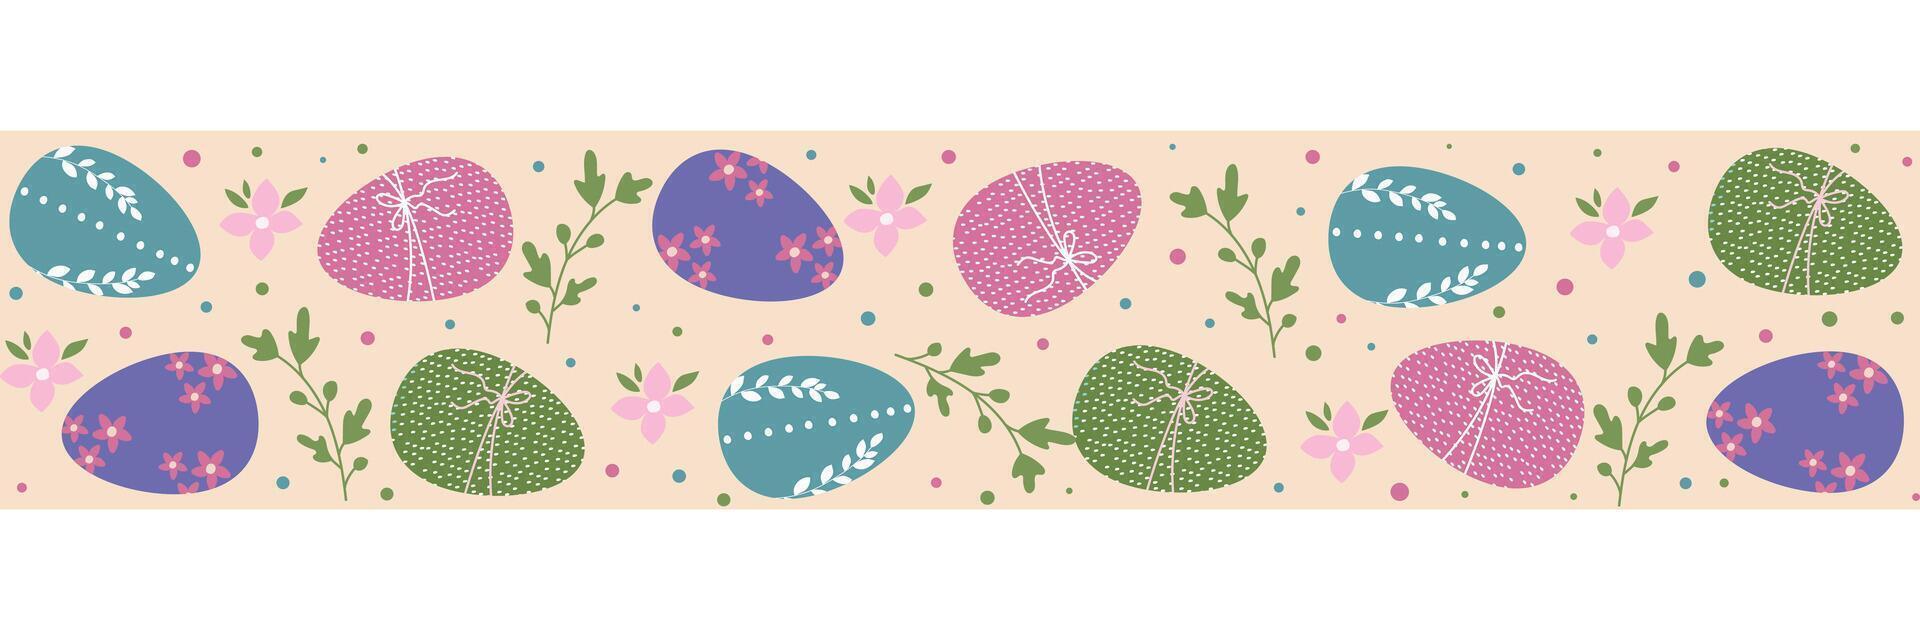 frontera con Pascua de Resurrección huevos y hojas. Pascua de Resurrección modelo. vector